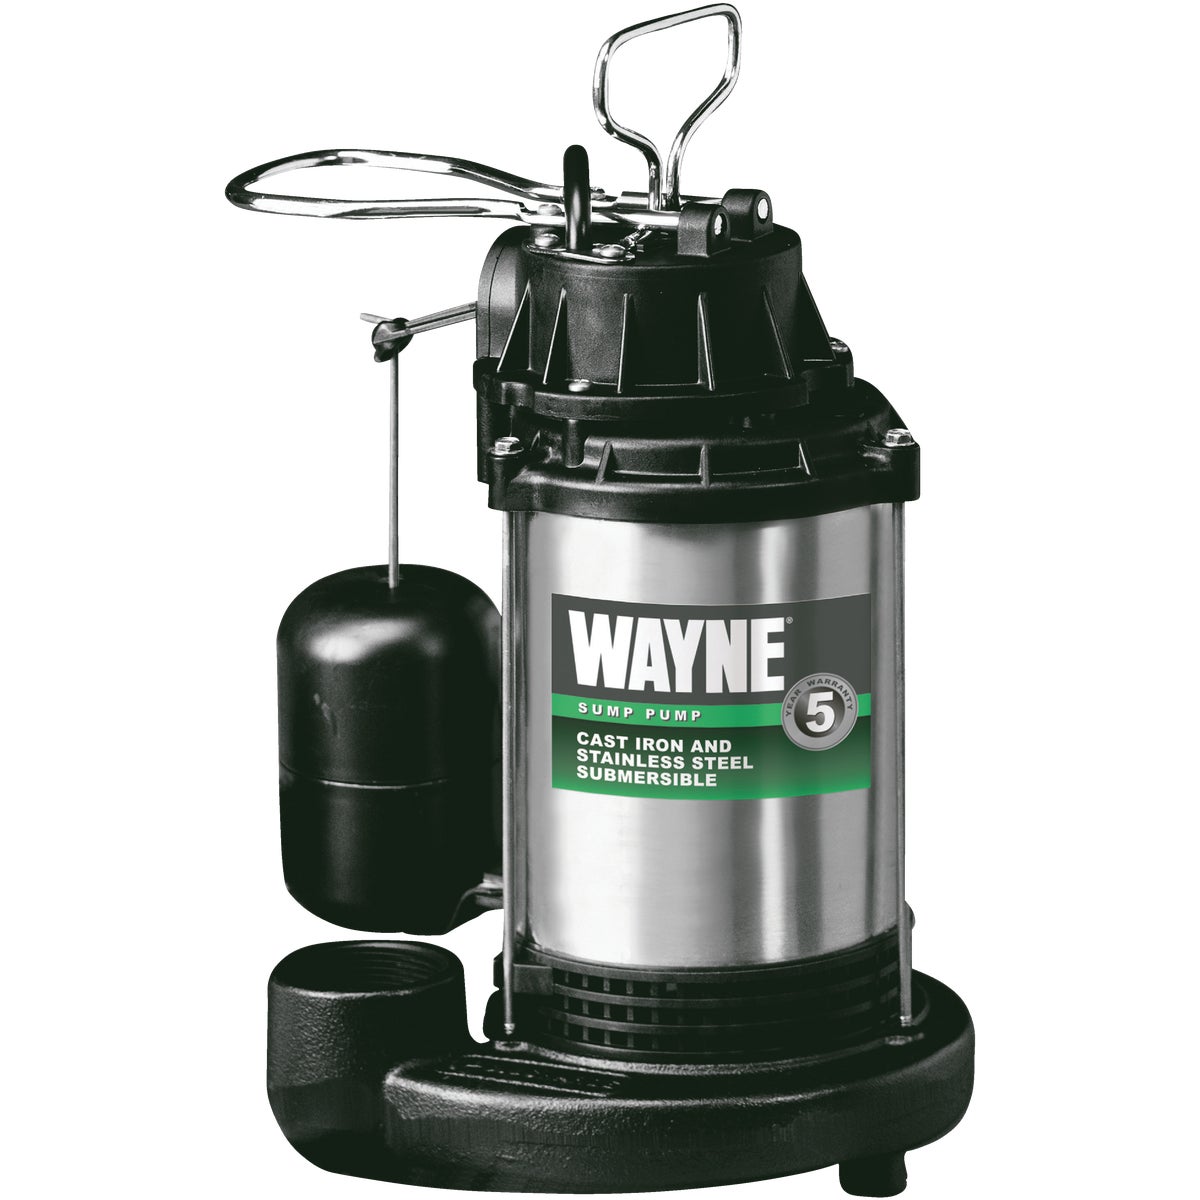 Wayne 3/4 HP 115V Submersible Sump Pump